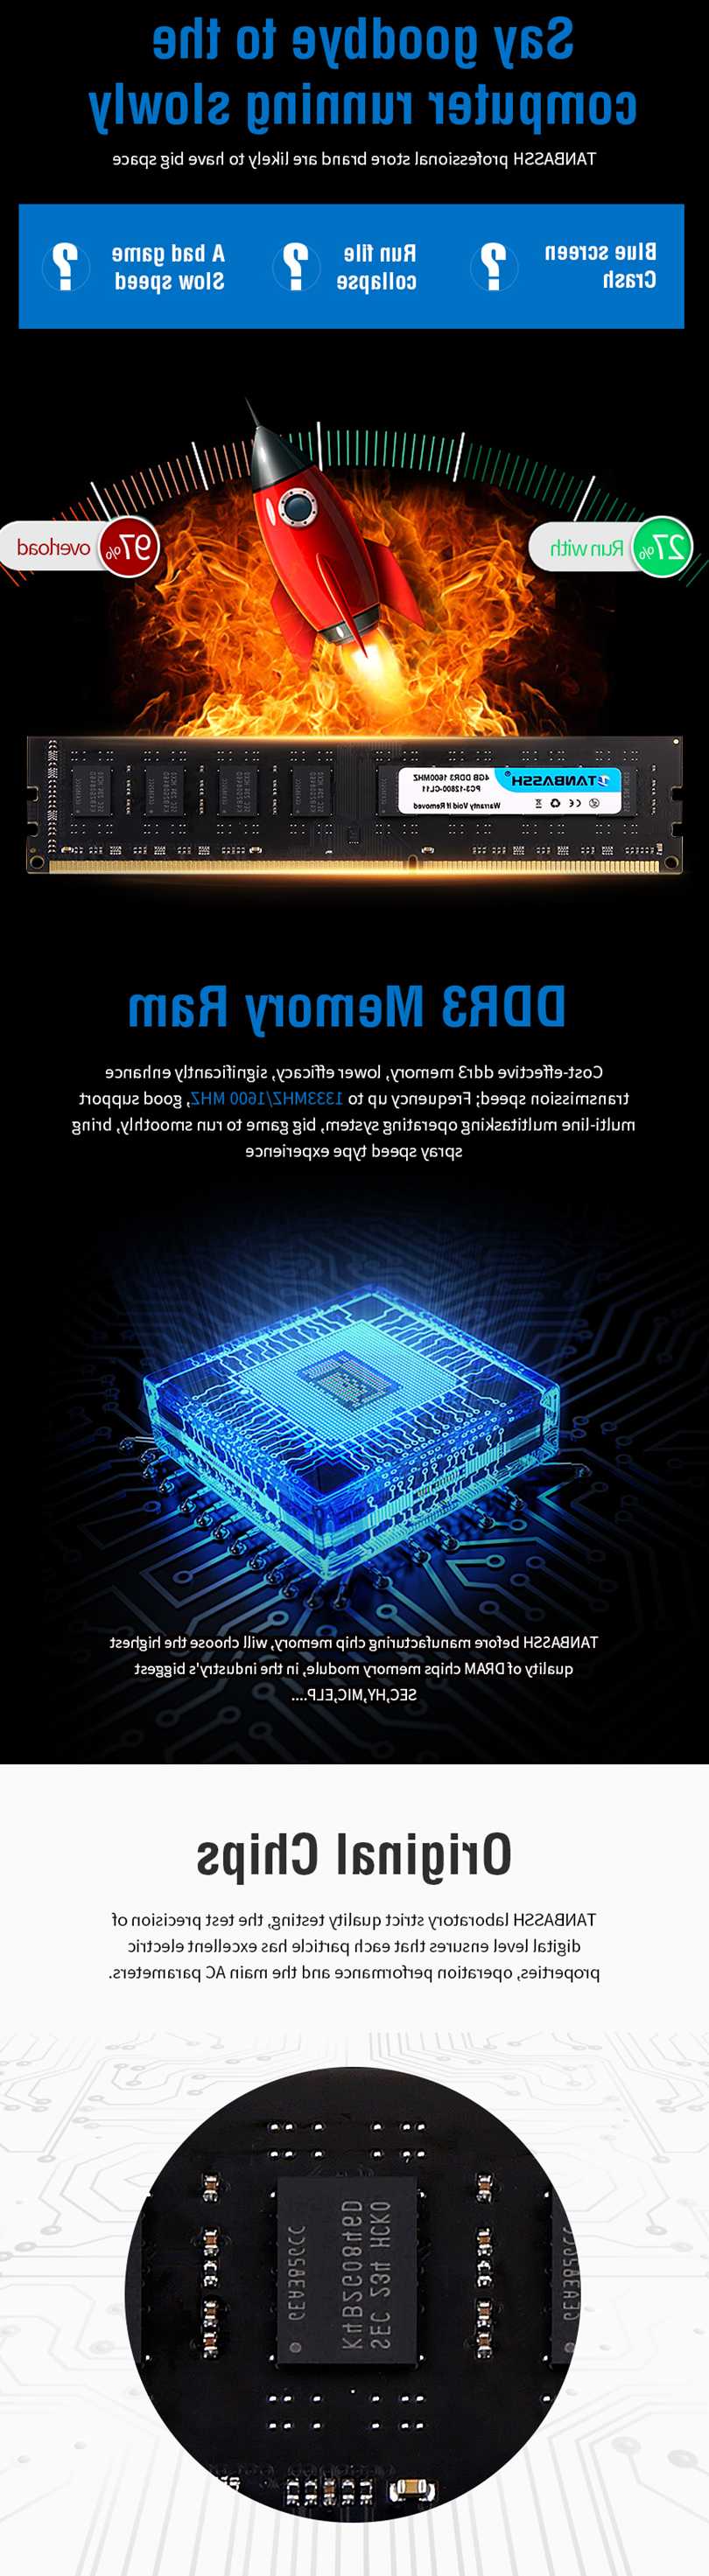 Tanie TANBASSH 4GB 8GB DDR3 1600MHz pamięć stacjonarna RAM kompaty… sklep internetowy